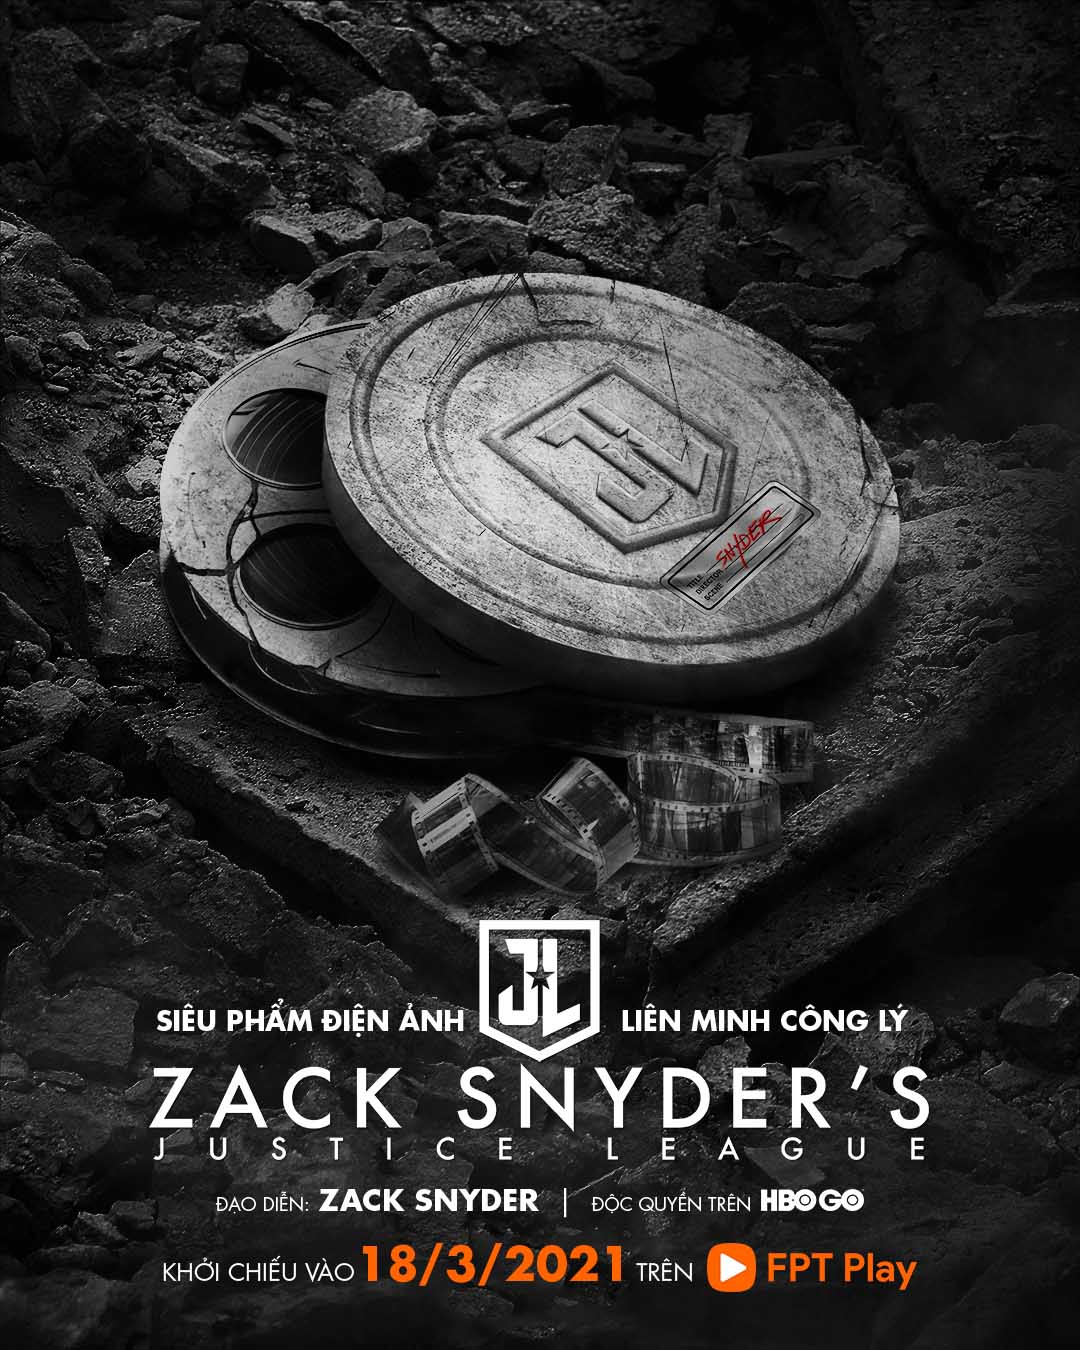 Liên Minh Công Lý của Zack Snyder công chiếu trực tuyến độc quyền HBO GO trên FPT Play